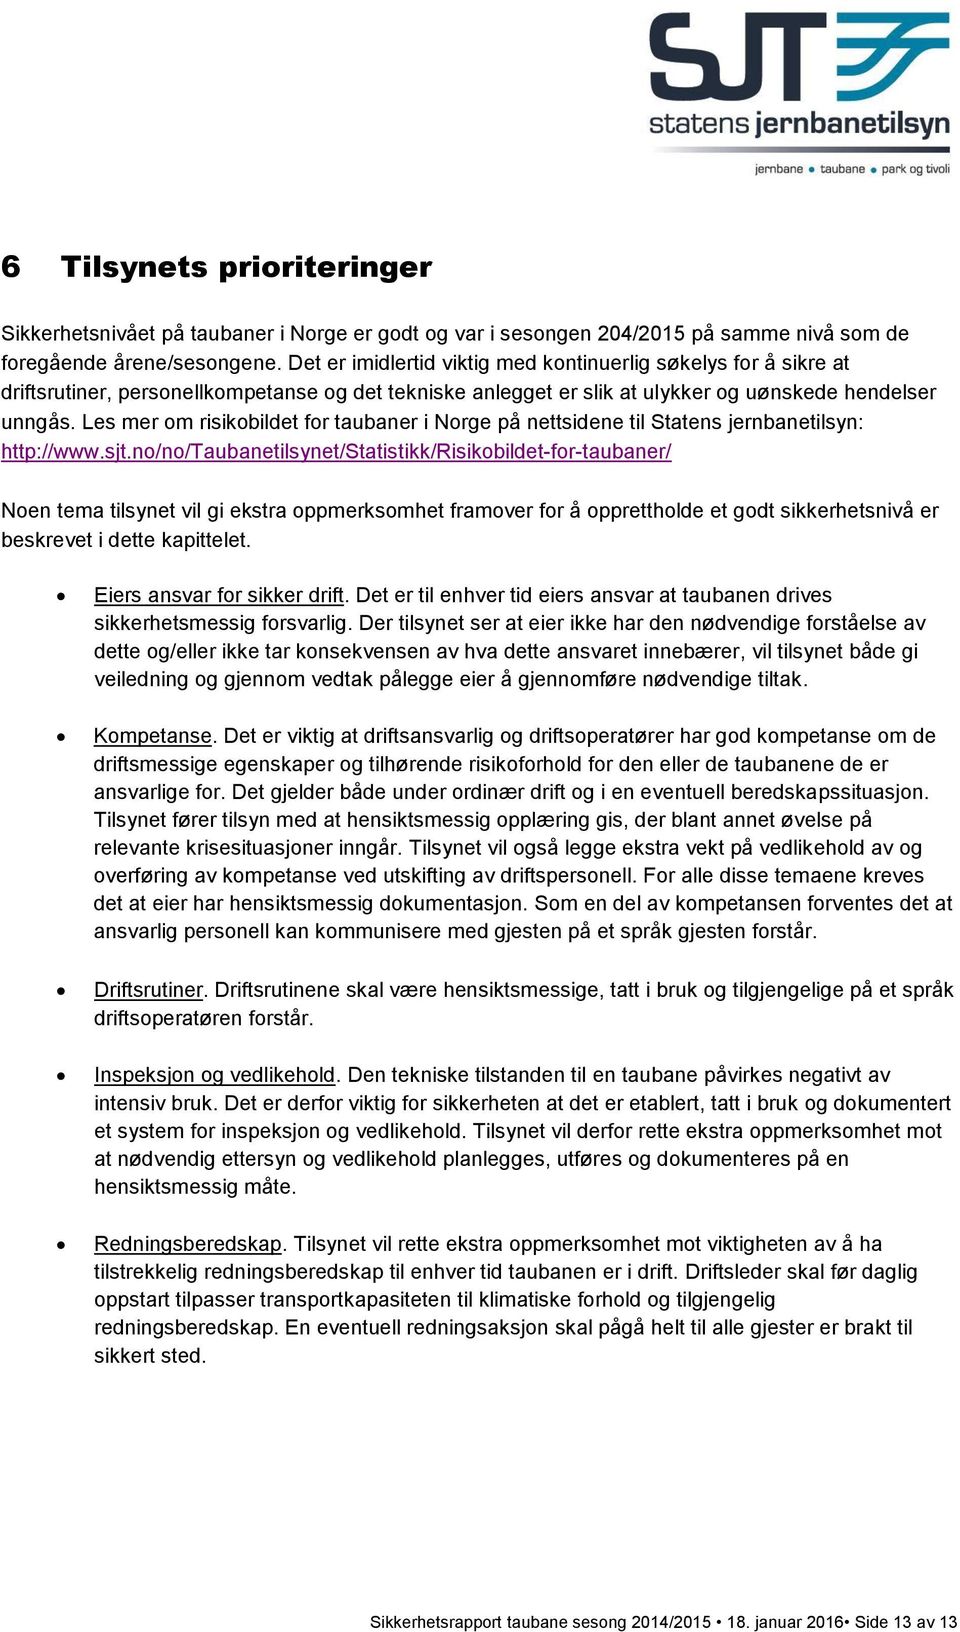 Les mer om risikobildet for taubaner i Norge på nettsidene til Statens jernbanetilsyn: http://www.sjt.